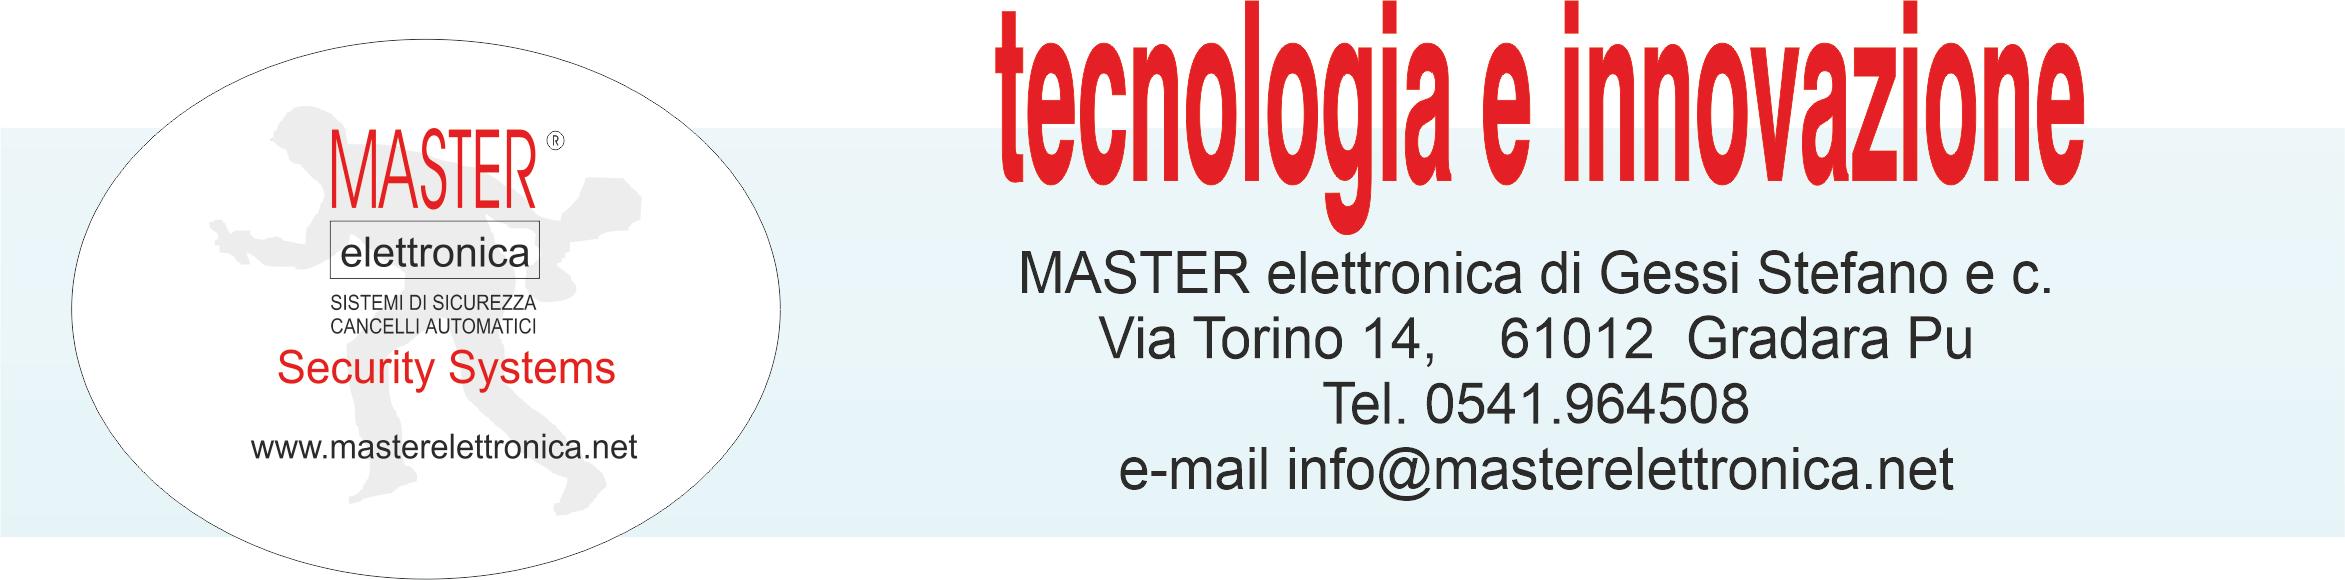 Master Elettronica: sistemi di sicurezza, antifurto, cancelli automatici - Gradara (Pesaro Urbino)